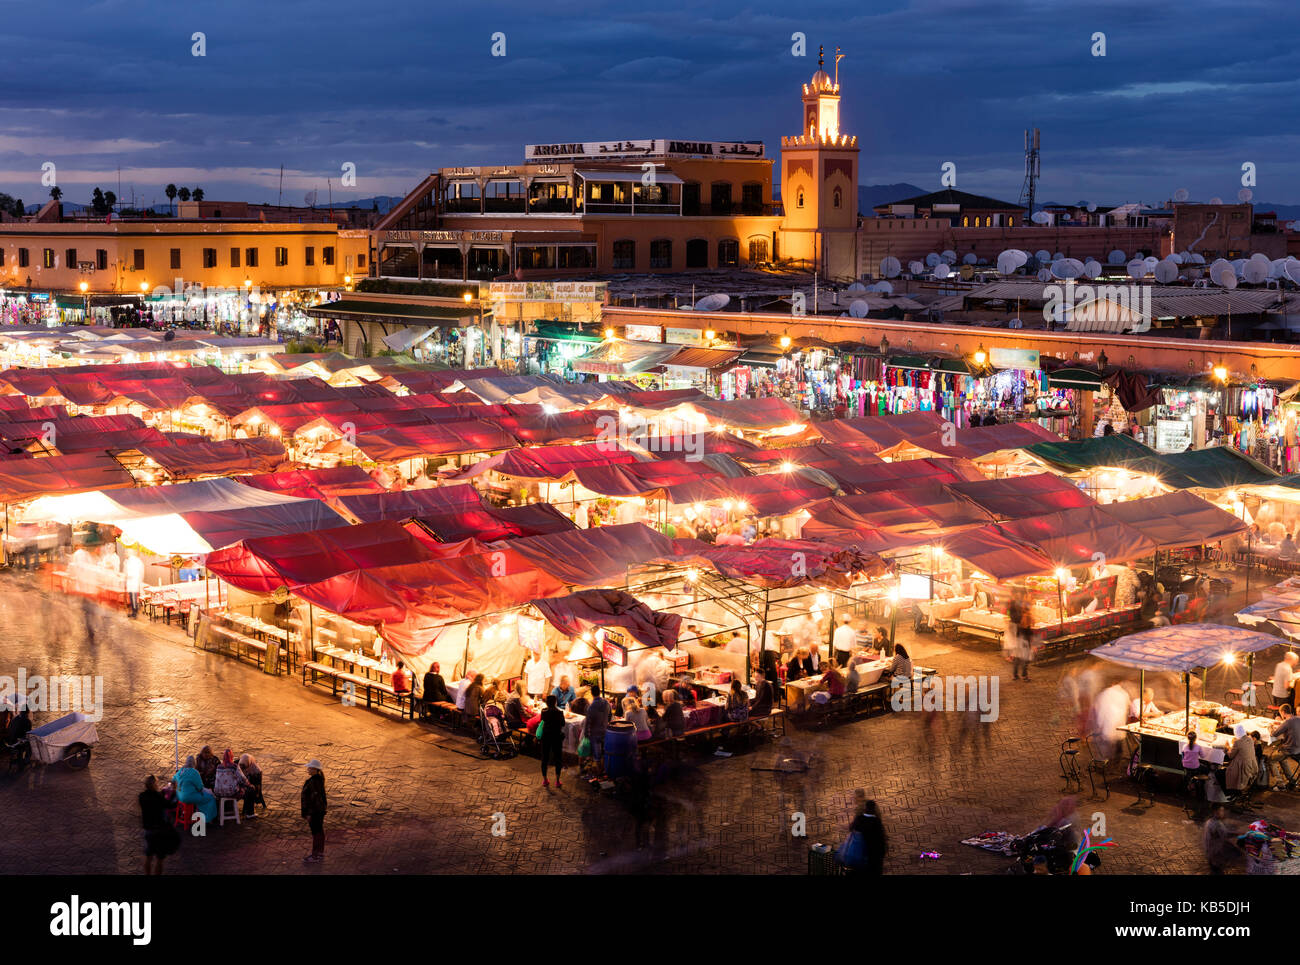 Vistas de la plaza Djemaa el Fna al atardecer mostrando puestos de comida y tiendas, Marrakech, Marruecos, África del Norte, África Foto de stock